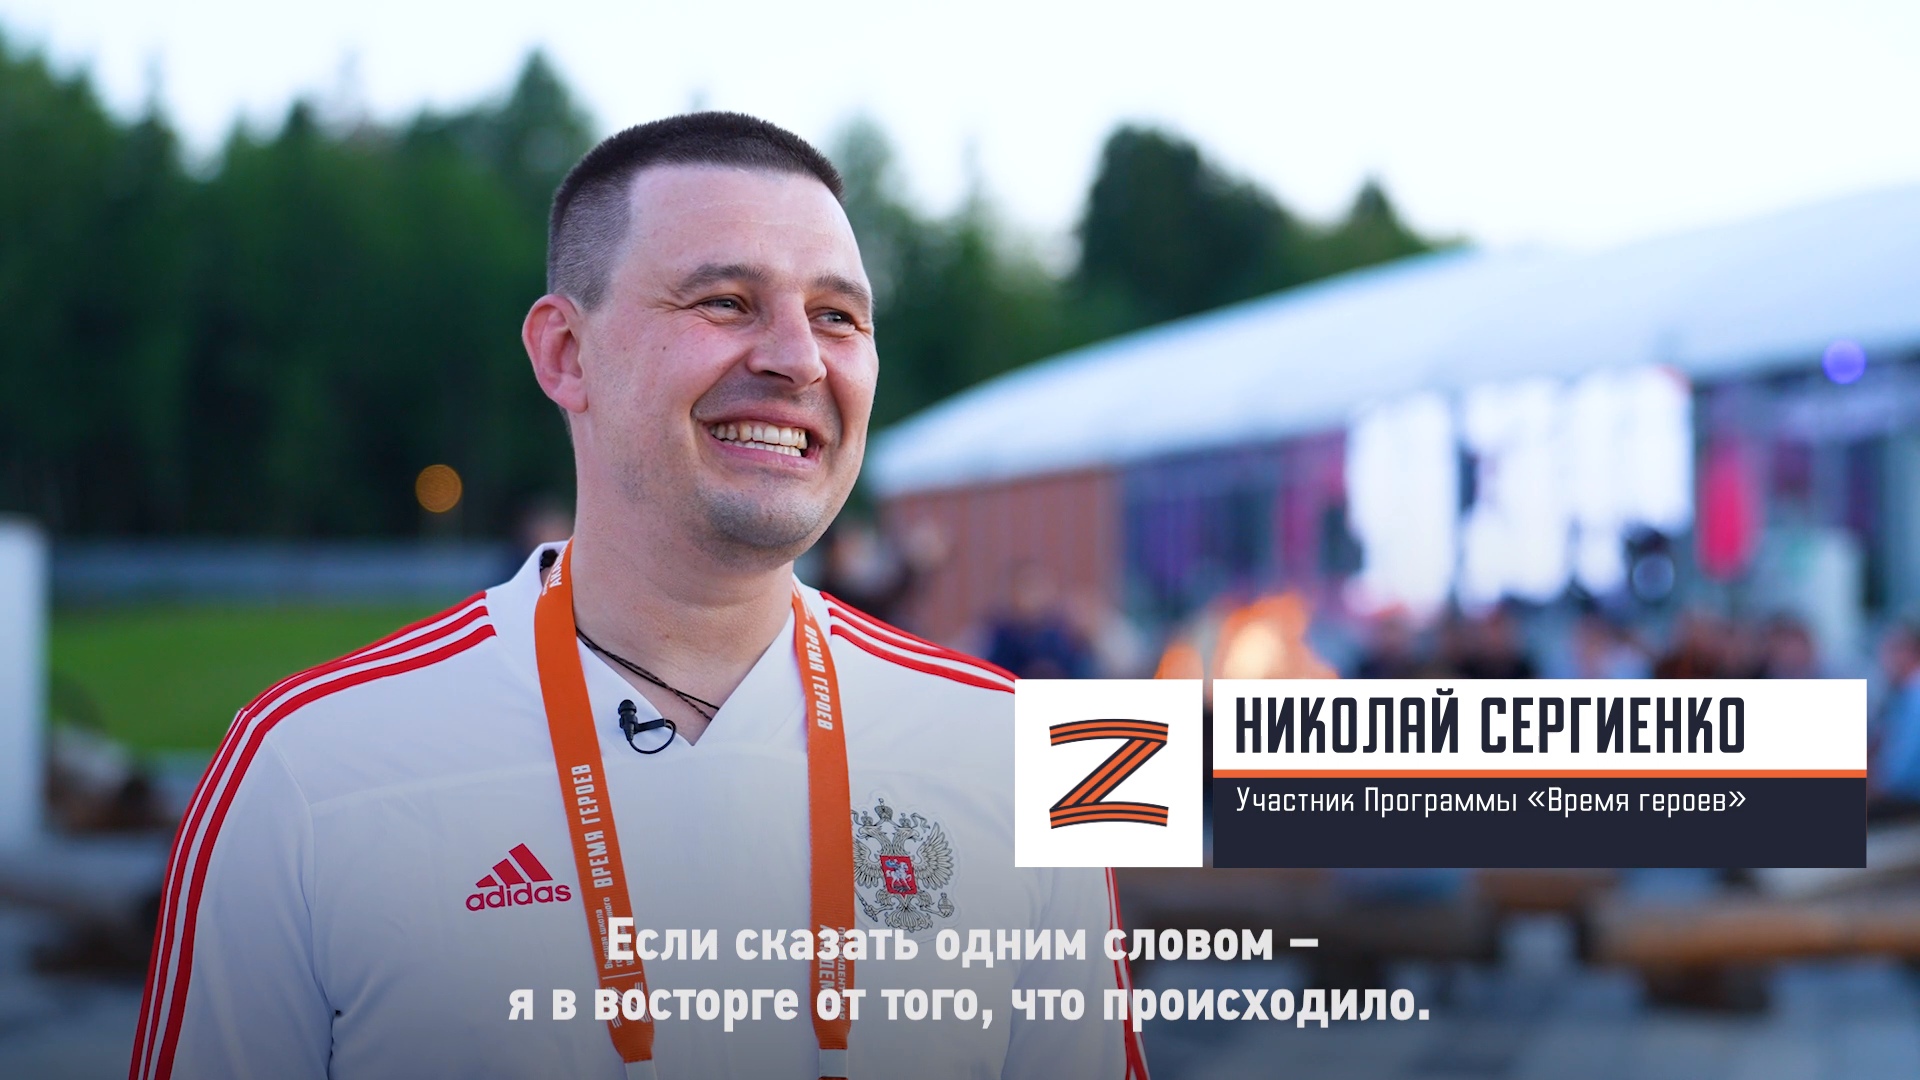 Участник Программы «Время героев» Николай Сергиенко о своём участии в Программе